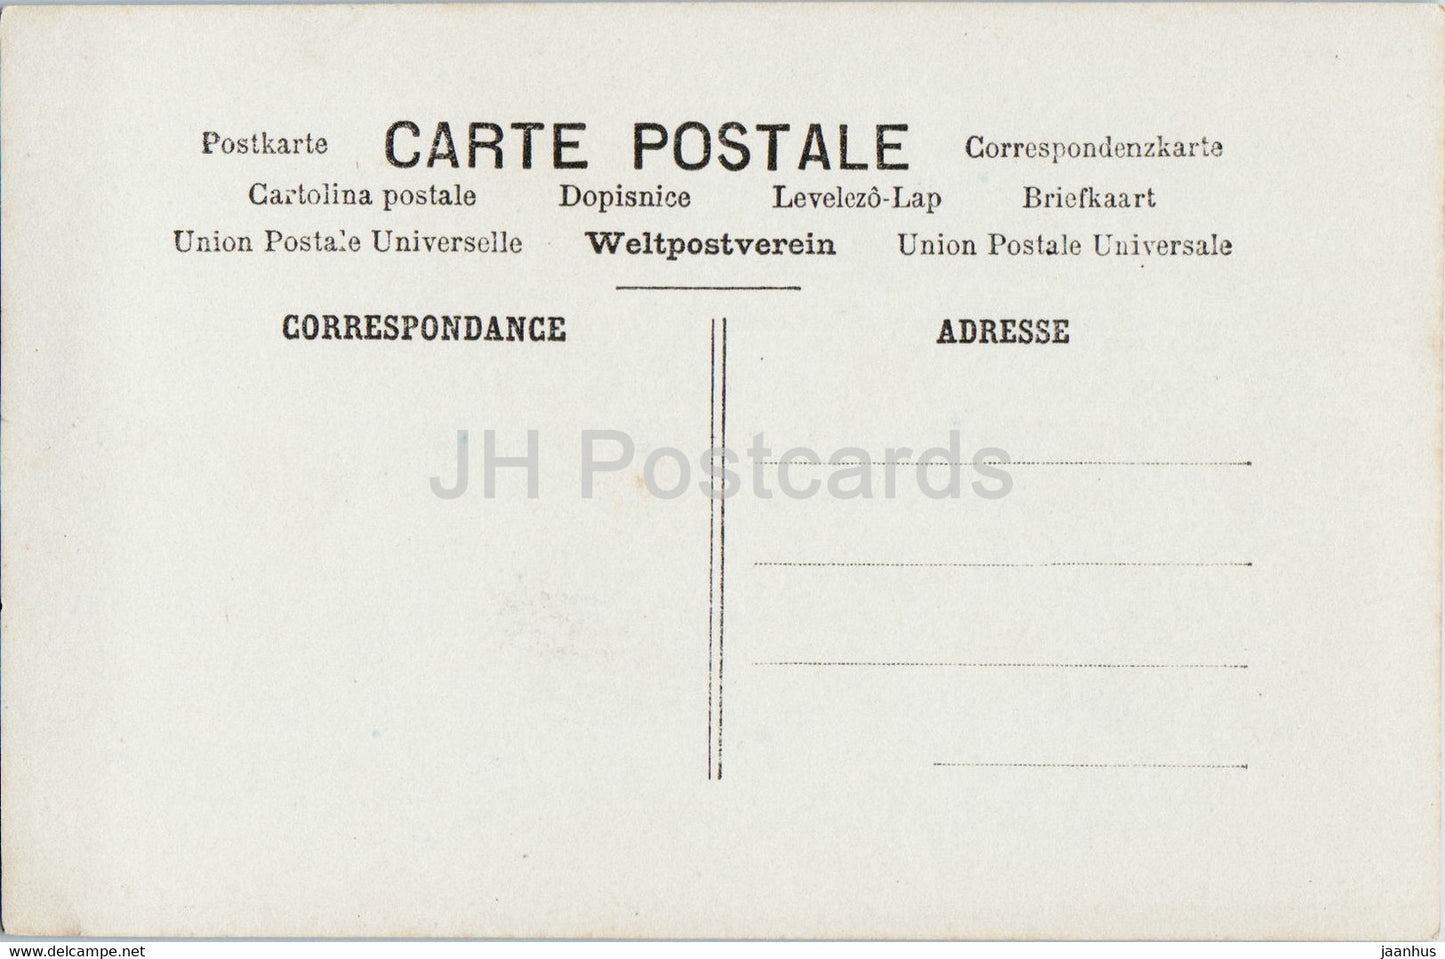 Carte de voeux de Pâques - Heureuses Paques - fille - oeufs - 56 - ARS Paris - carte postale ancienne - carte postale ancienne - France - inutilisée